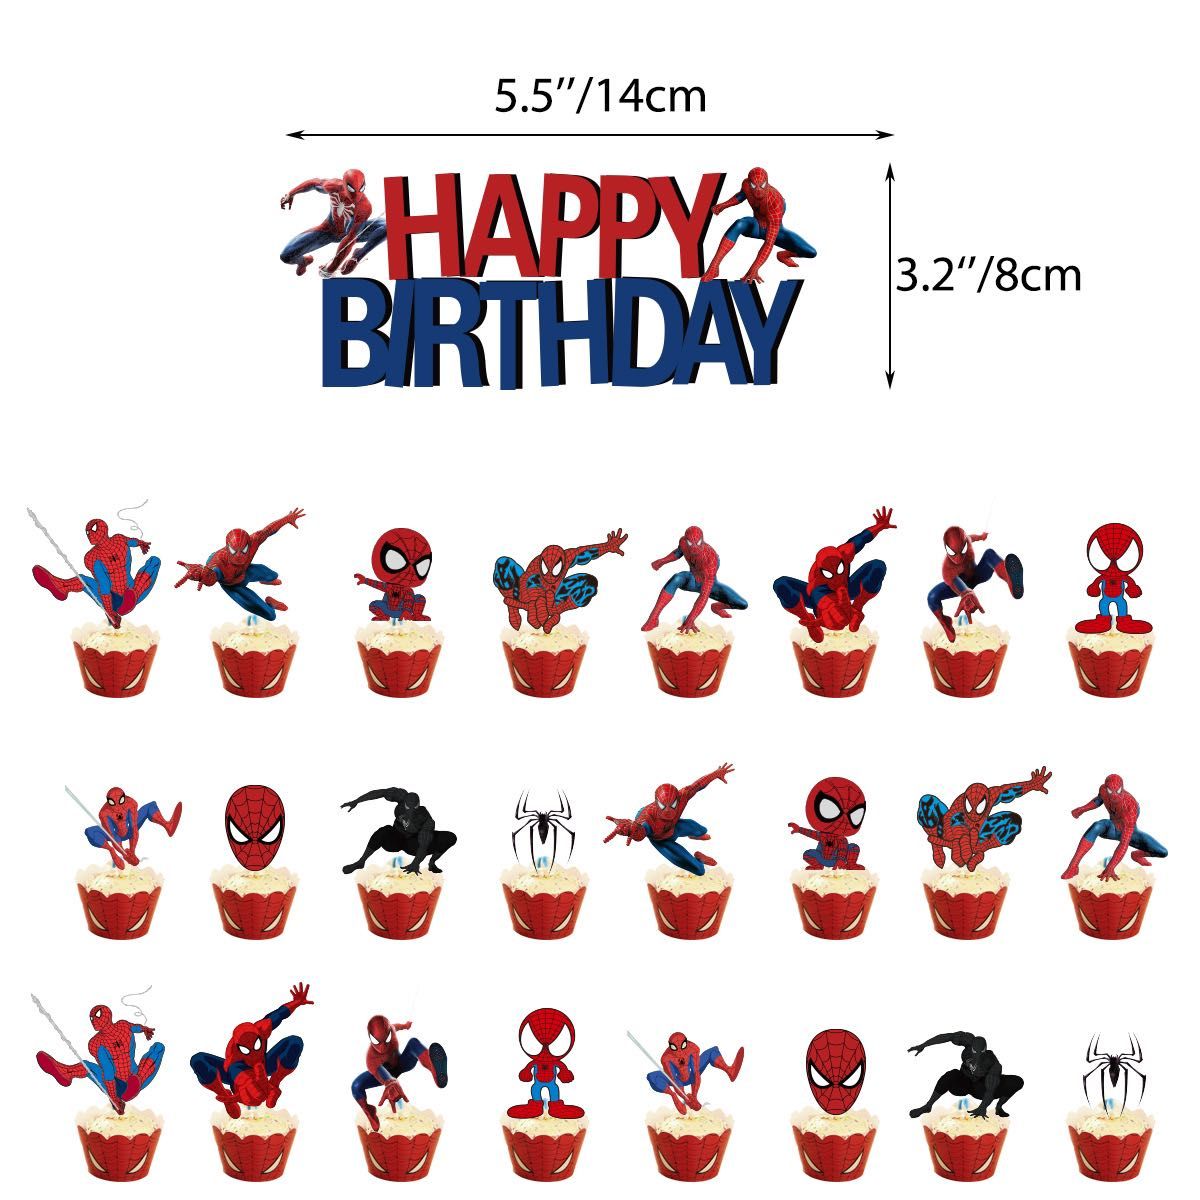 送料無料 誕生日 バルーン スパイダーマン風船 happybirthday ガーランド バースデー 飾りつけ ケーキトッパー